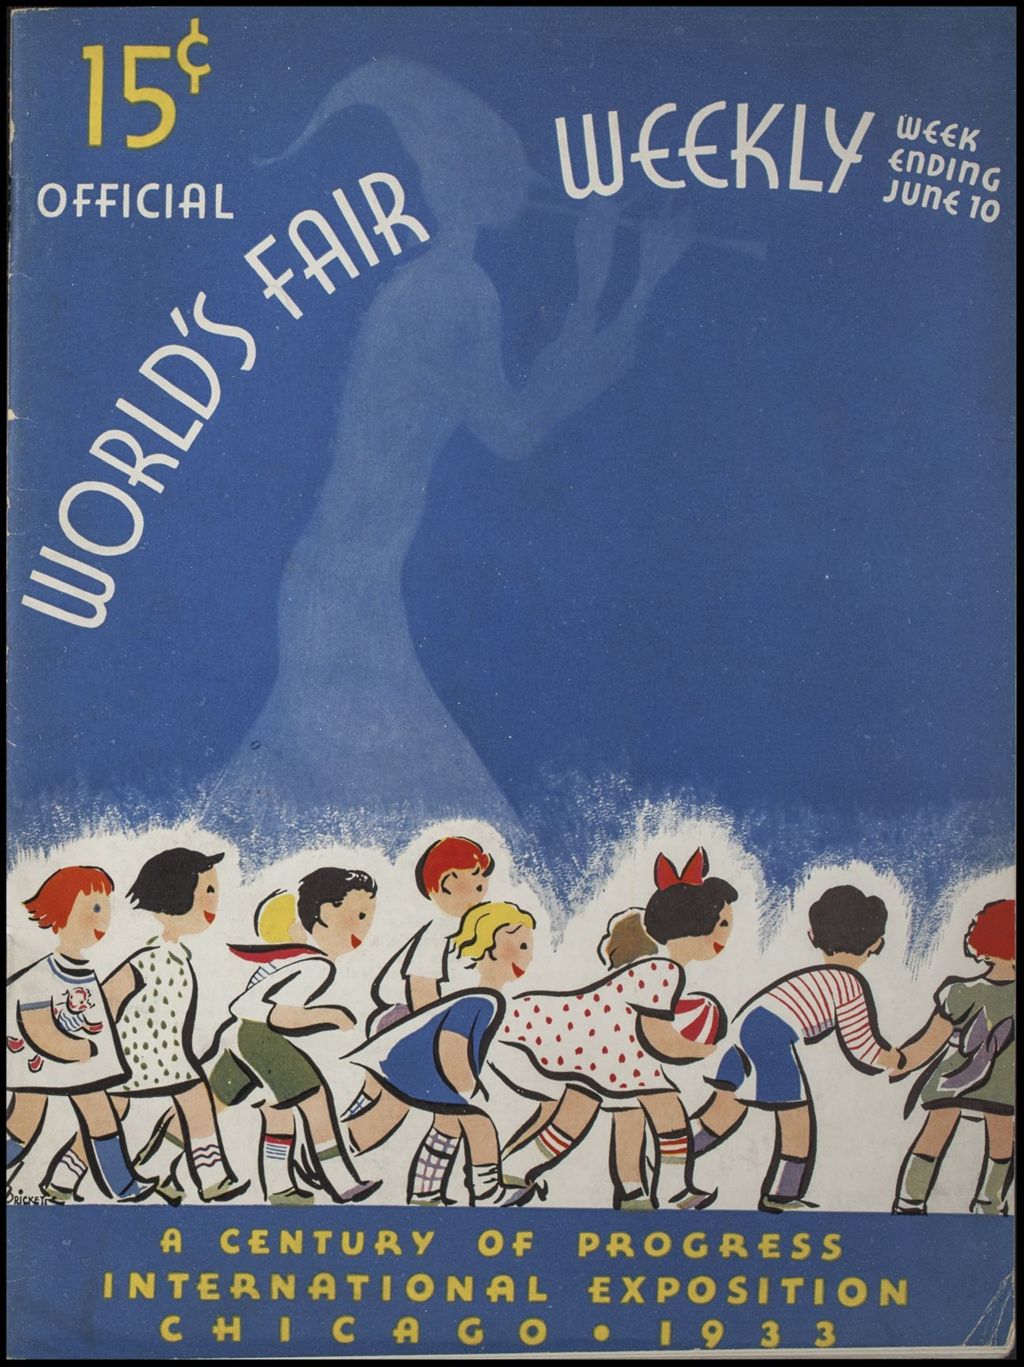 World's Fair Weekly, Week Ending June 10, 1933